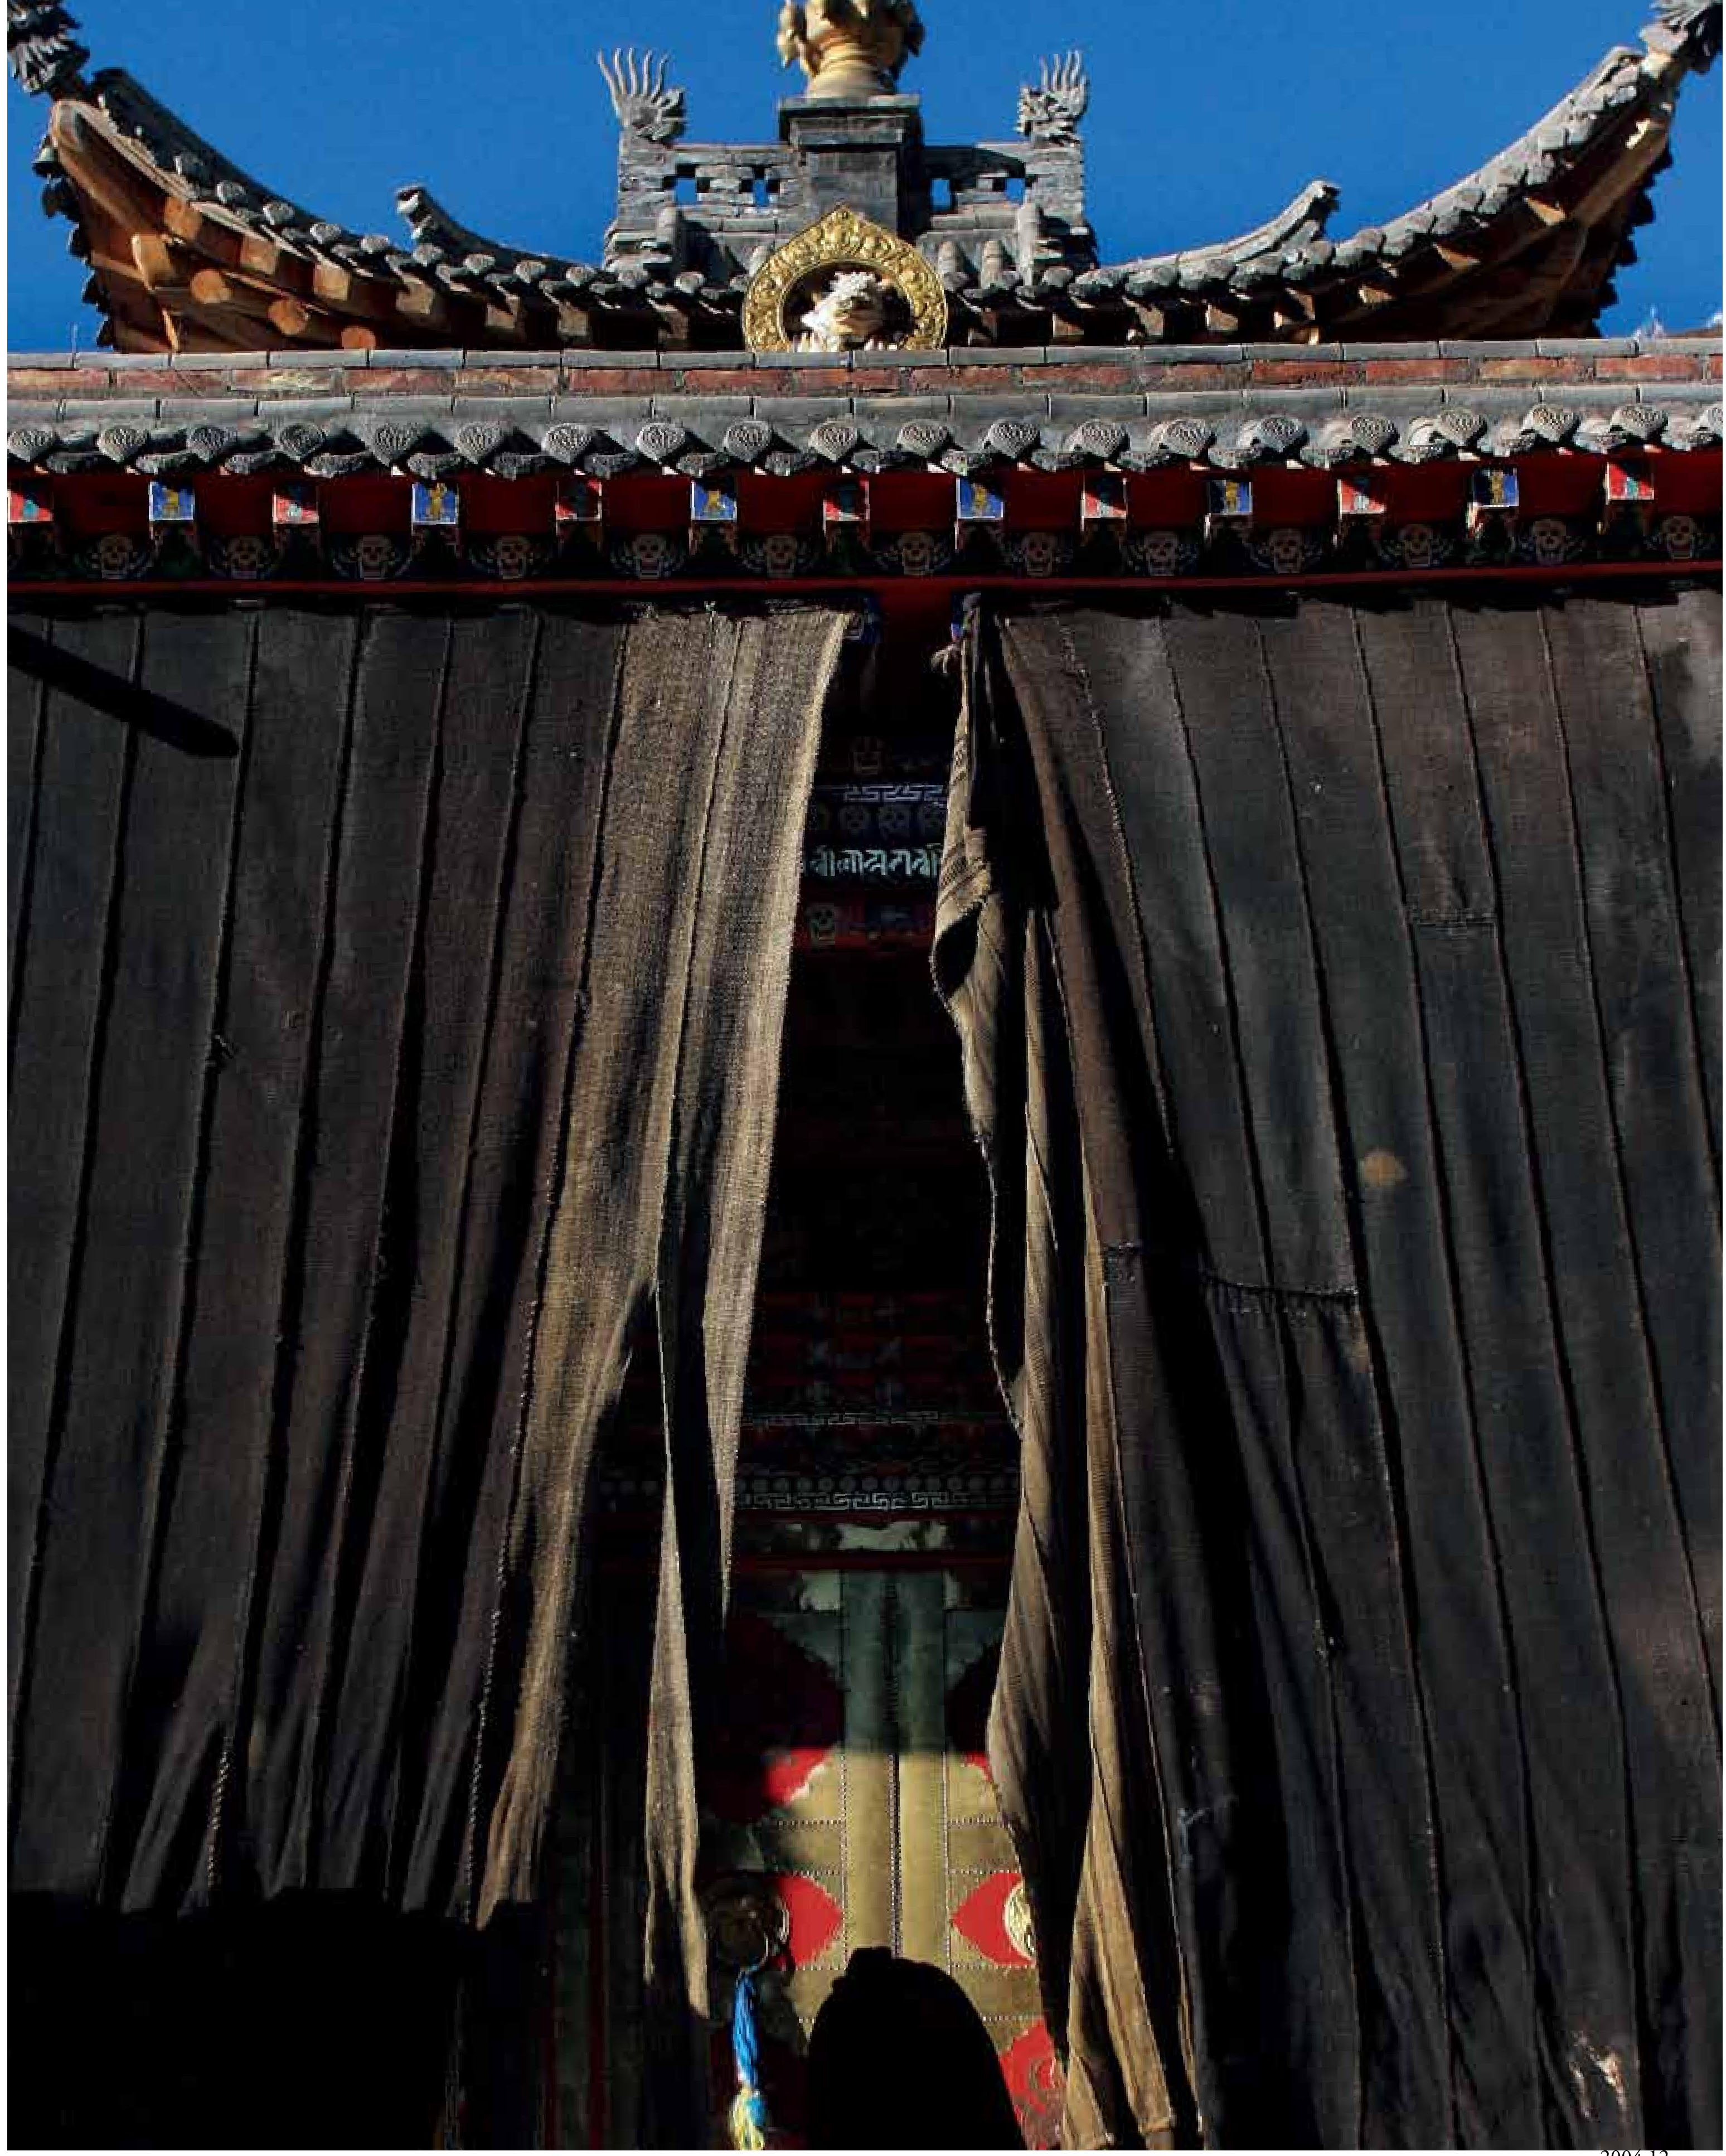 旺加寺位於青海省黃南藏族自治州同仁縣曲庫乎鄉西北木合沙村的北山包上，是青南地區最著名的苯教寺院。